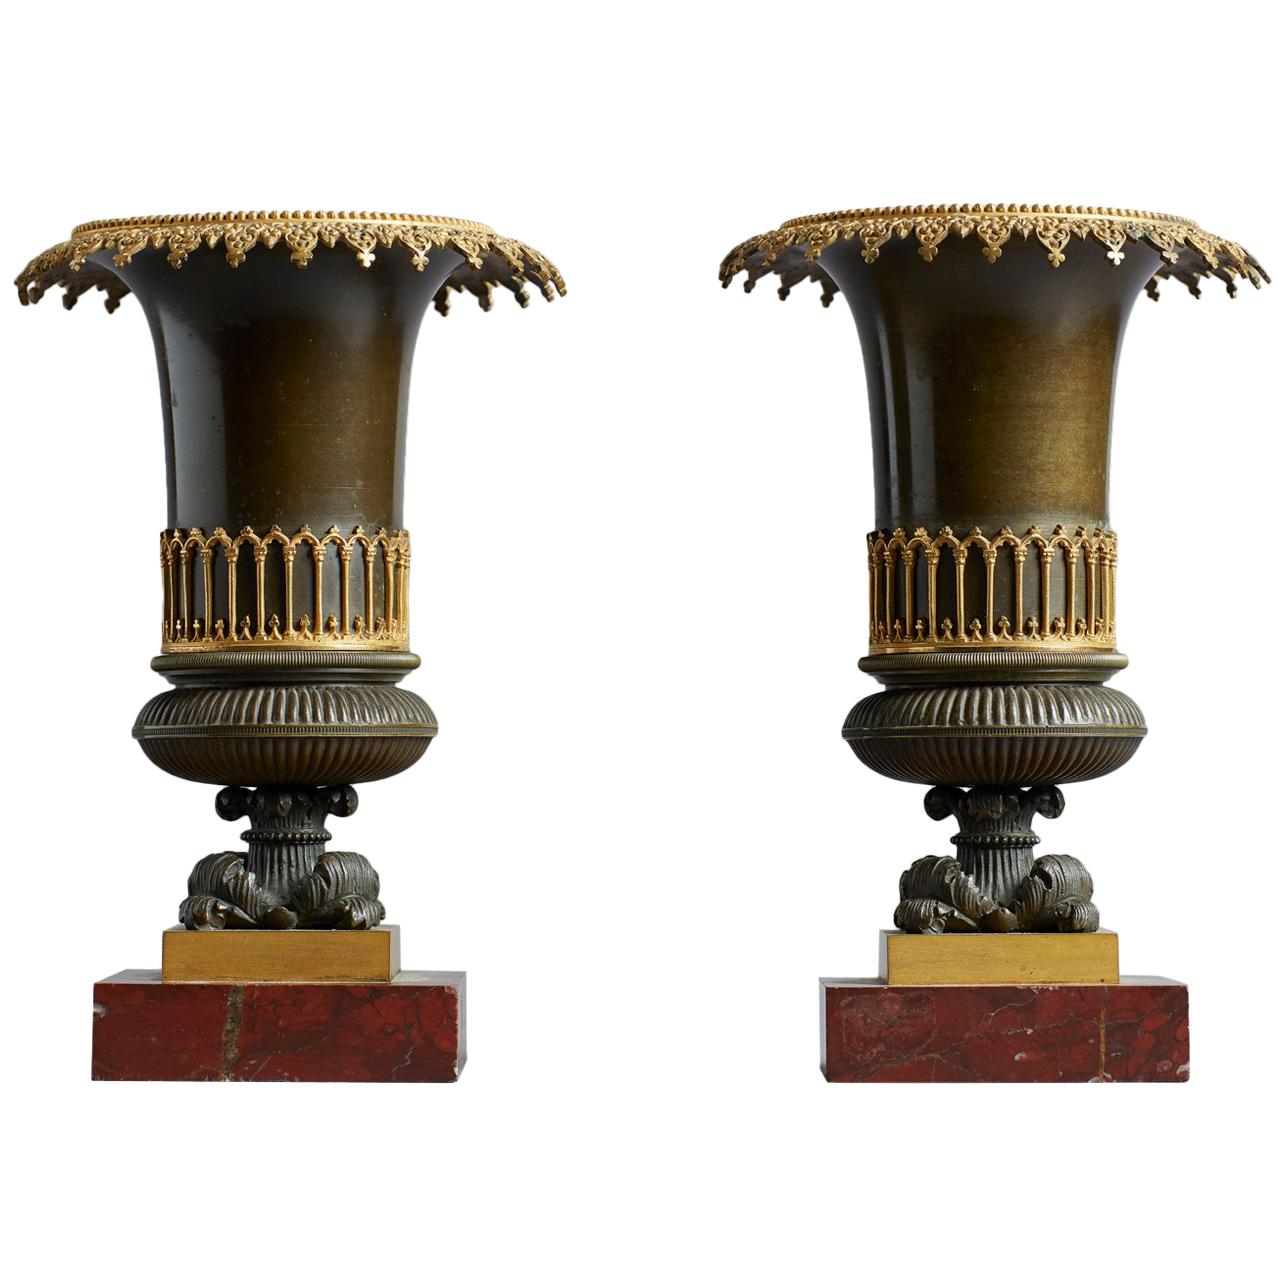 Paar französische Urnenvasen aus Bronze im neogotischen Stil des frühen 19. Jahrhunderts der Restauration